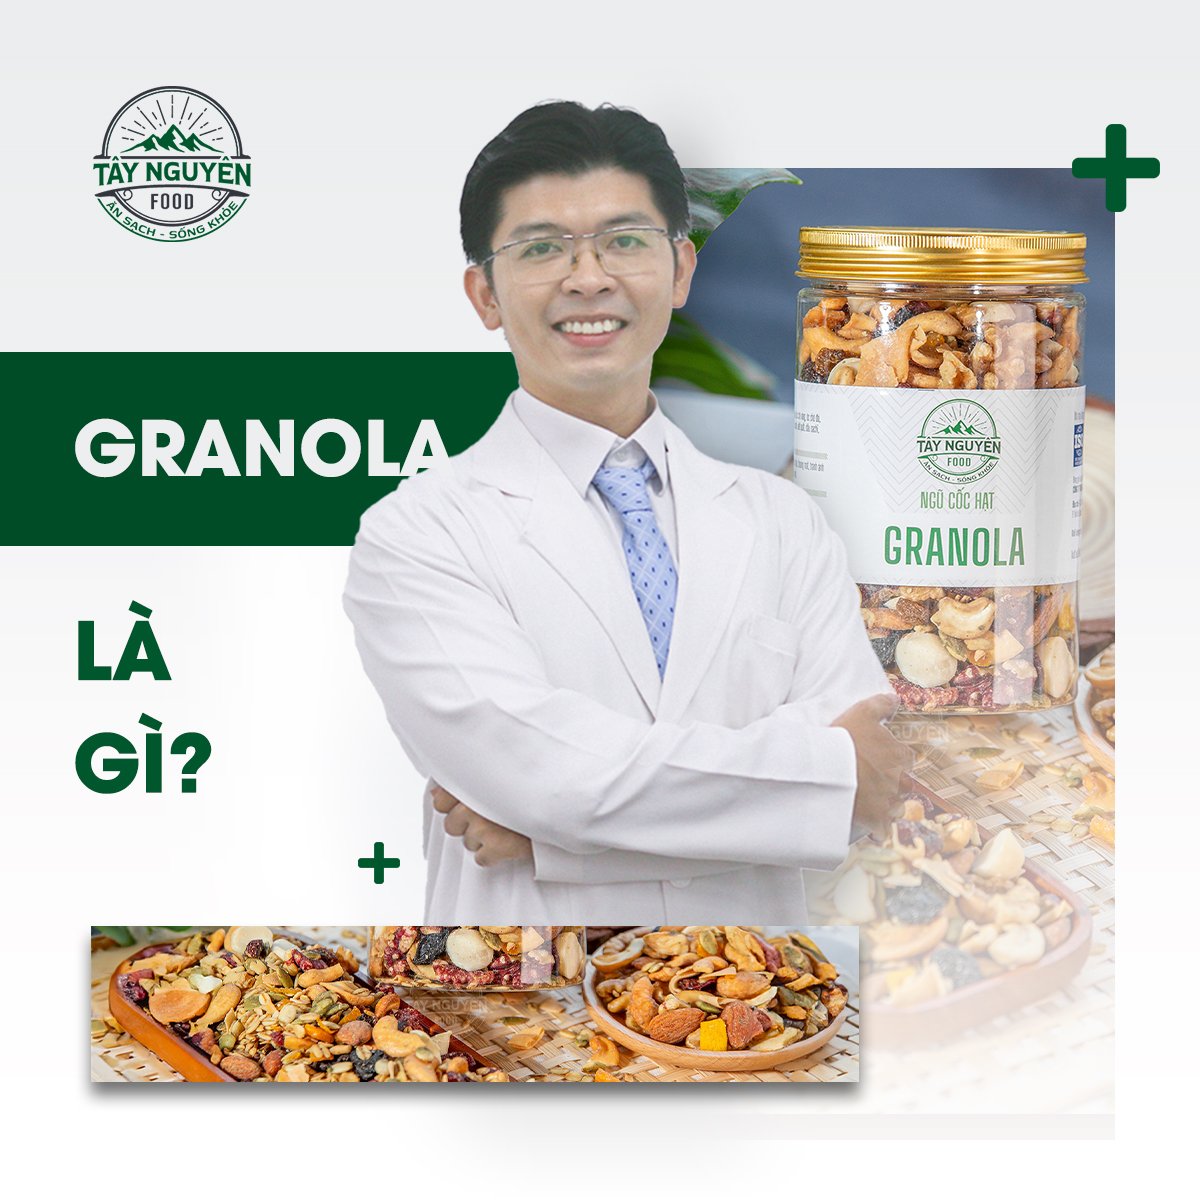 Granola là gì? Hẳn là nhiều bạn mới ăn “eatclean” sẽ thấy lạ lẫm với cái tên Granola